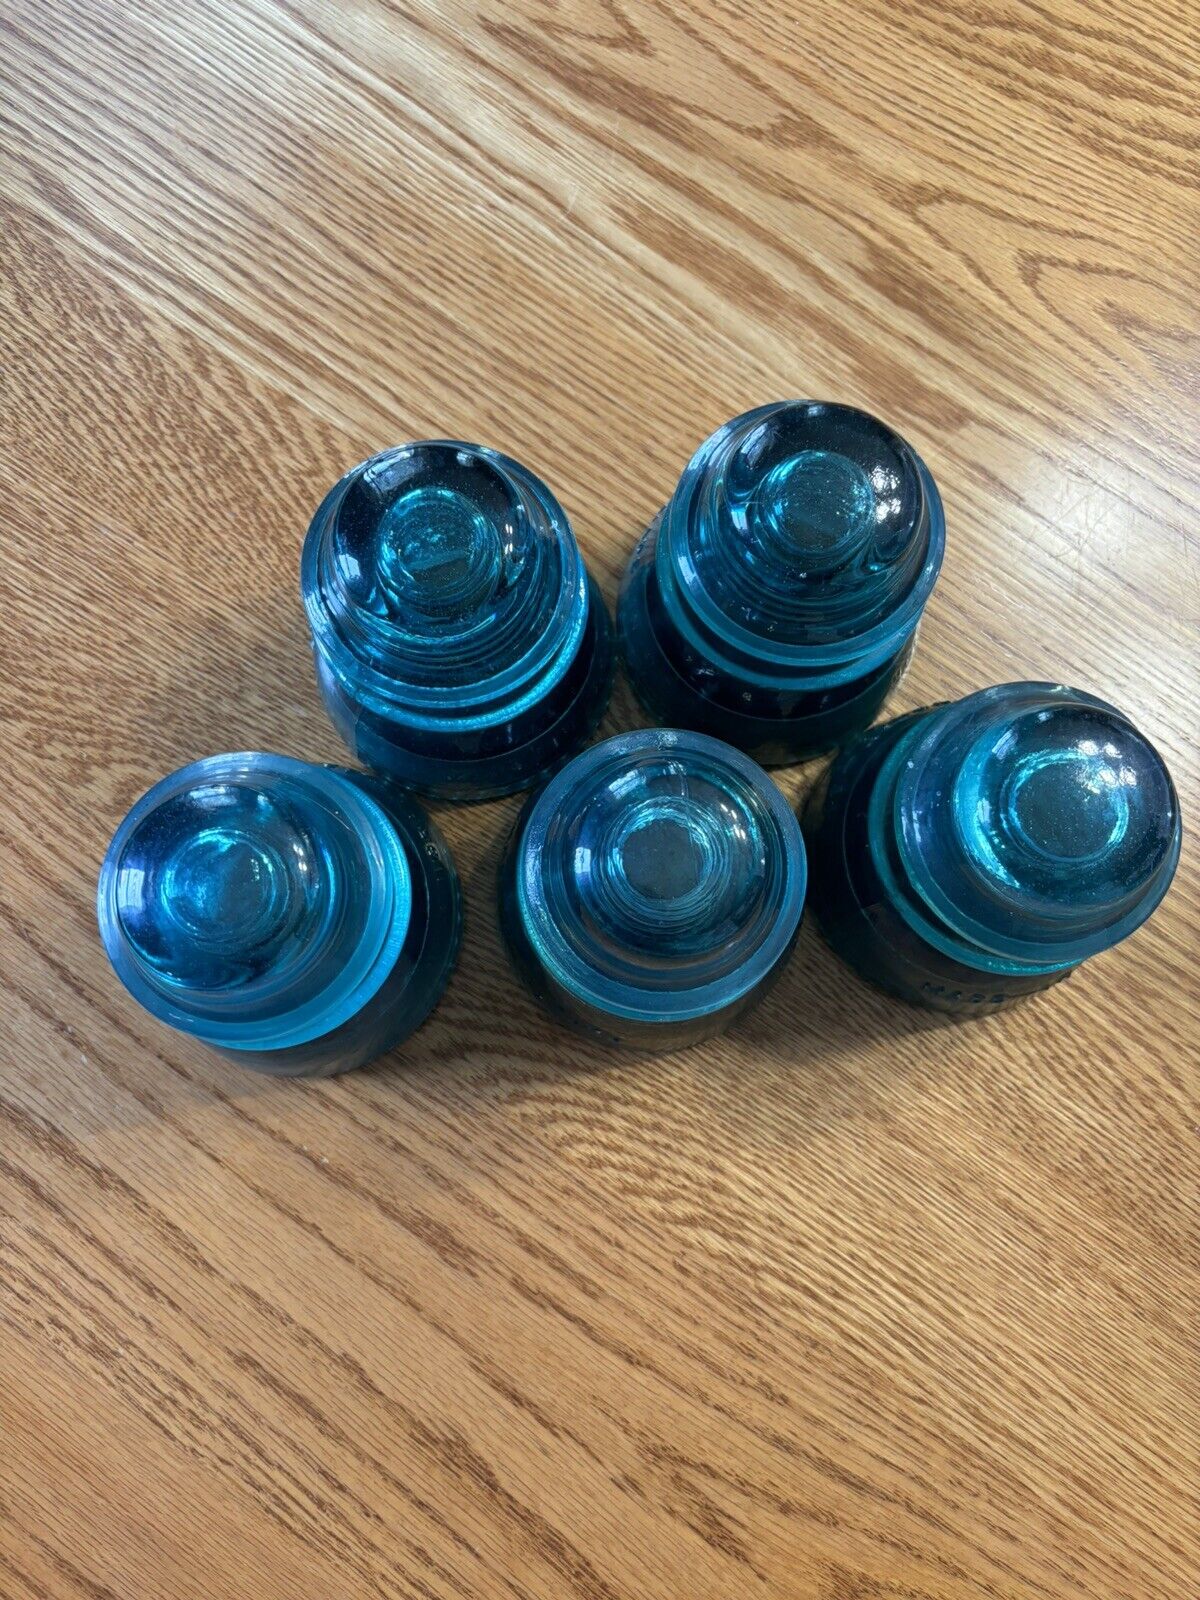 Hemingray Aqua Blue No 42 MADE IN U.S.A. Vintage Glass Insulator (5 in Total)